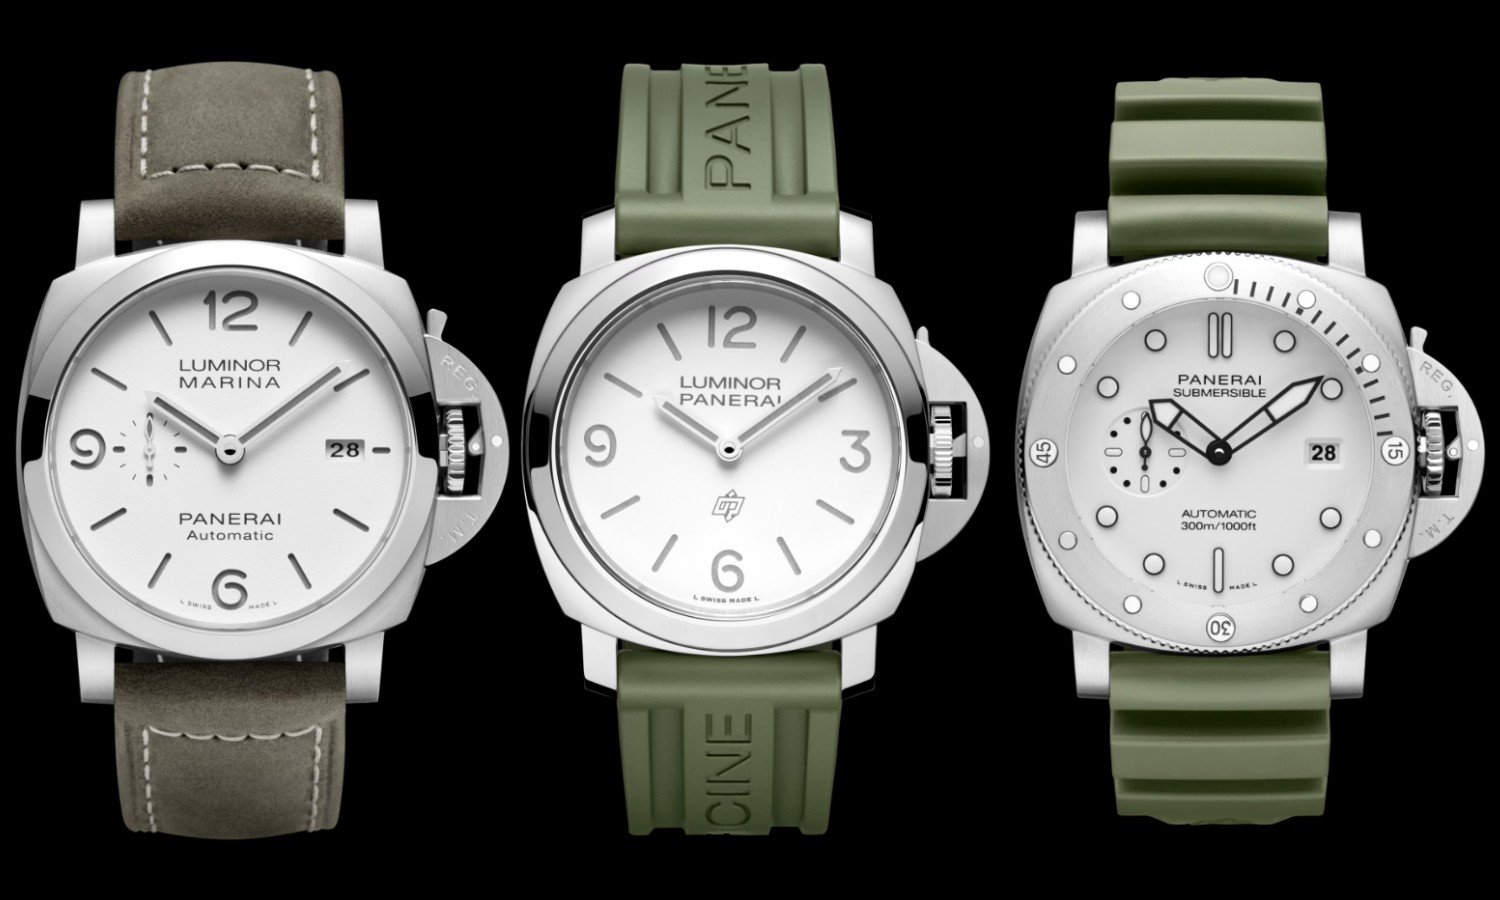 Drei Panerai Uhren nebeneinander mit verschiedenen Armbandmaterialien vor schwarzem Hintergrund